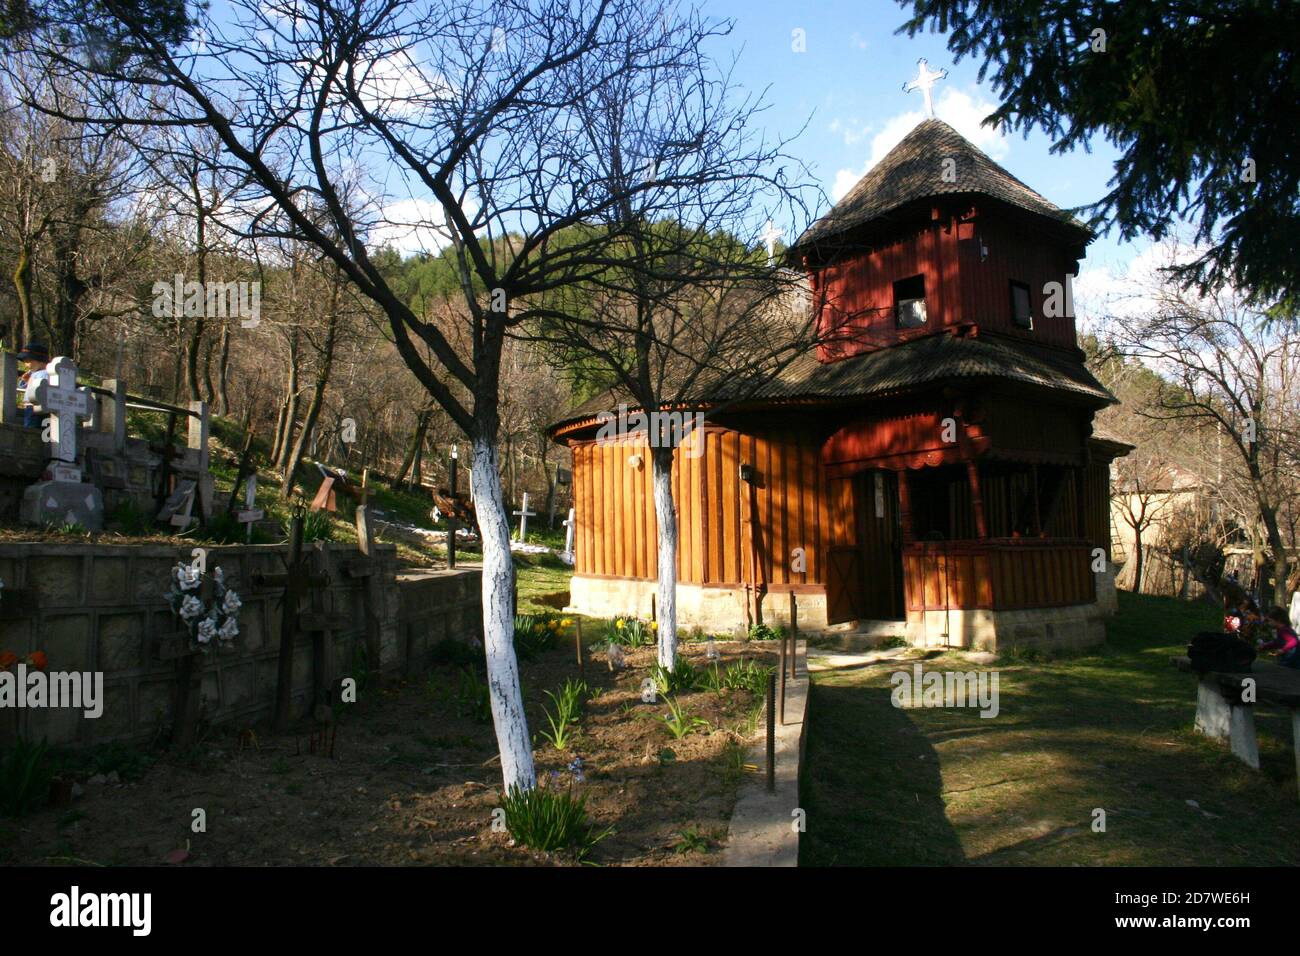 Prisaca, condado de Vrancea, Rumania. Vista exterior de la iglesia de madera ortodoxa cristiana del siglo XVIII (monumento histórico). Foto de stock